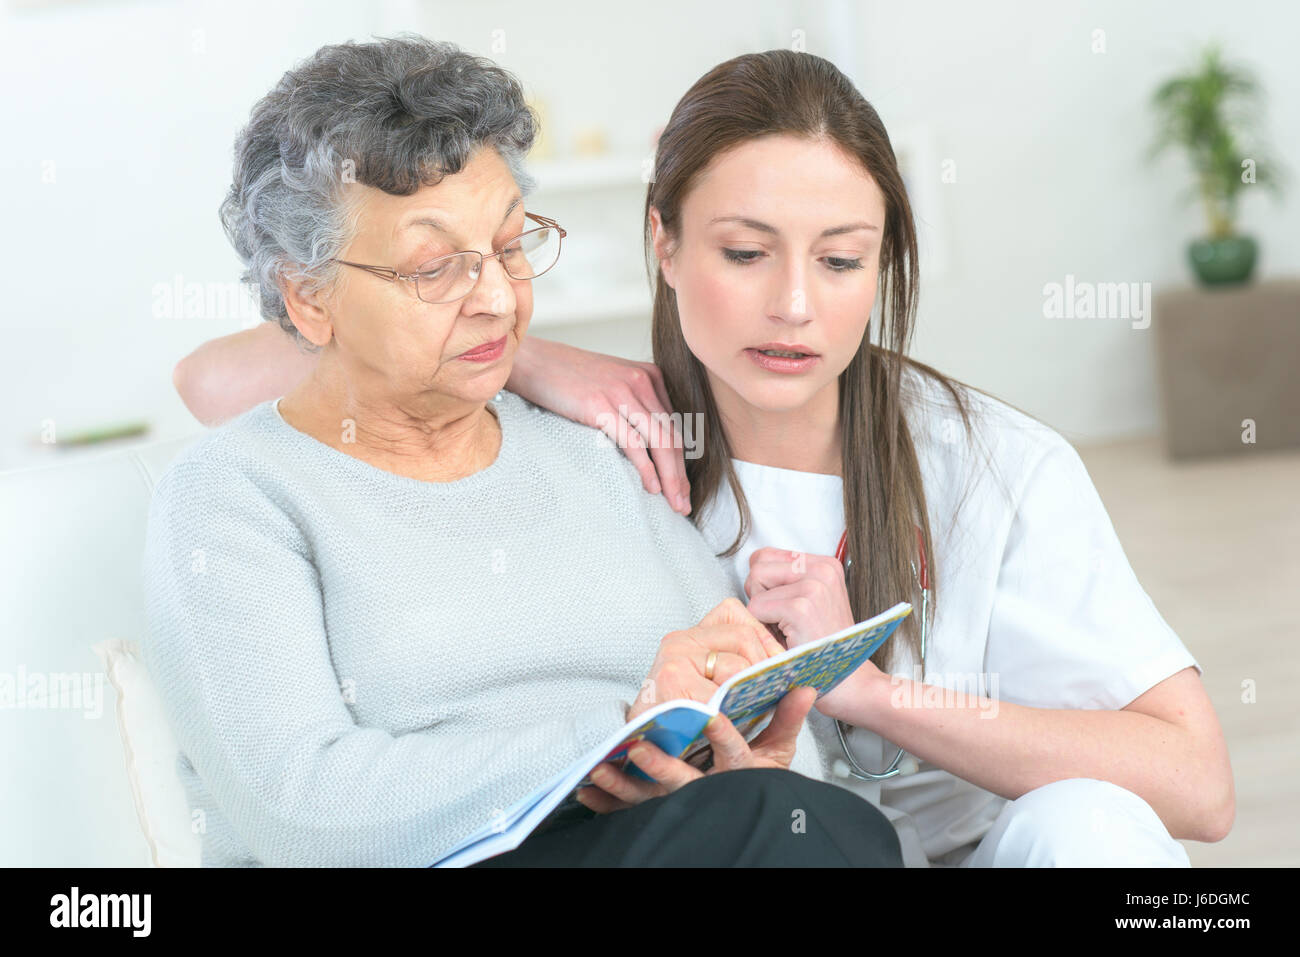 Signora anziana leggendo una rivista, più giovane donna dal suo lato Foto Stock